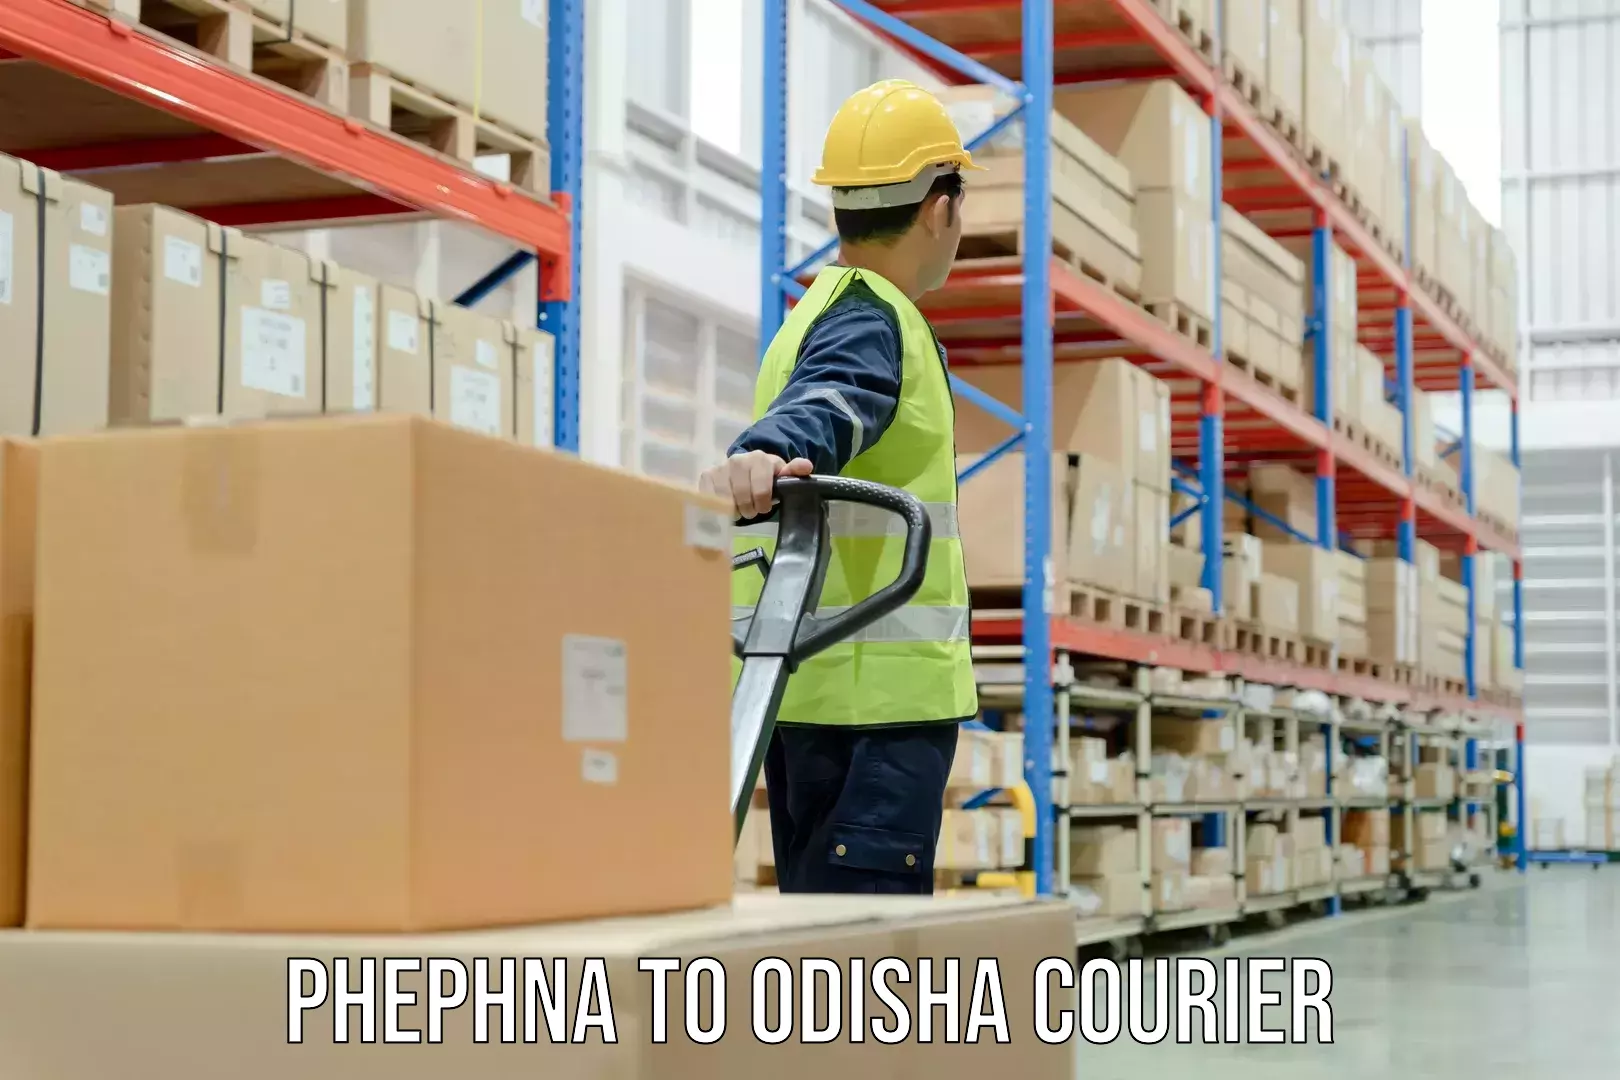 Premium courier services Phephna to Jeypore